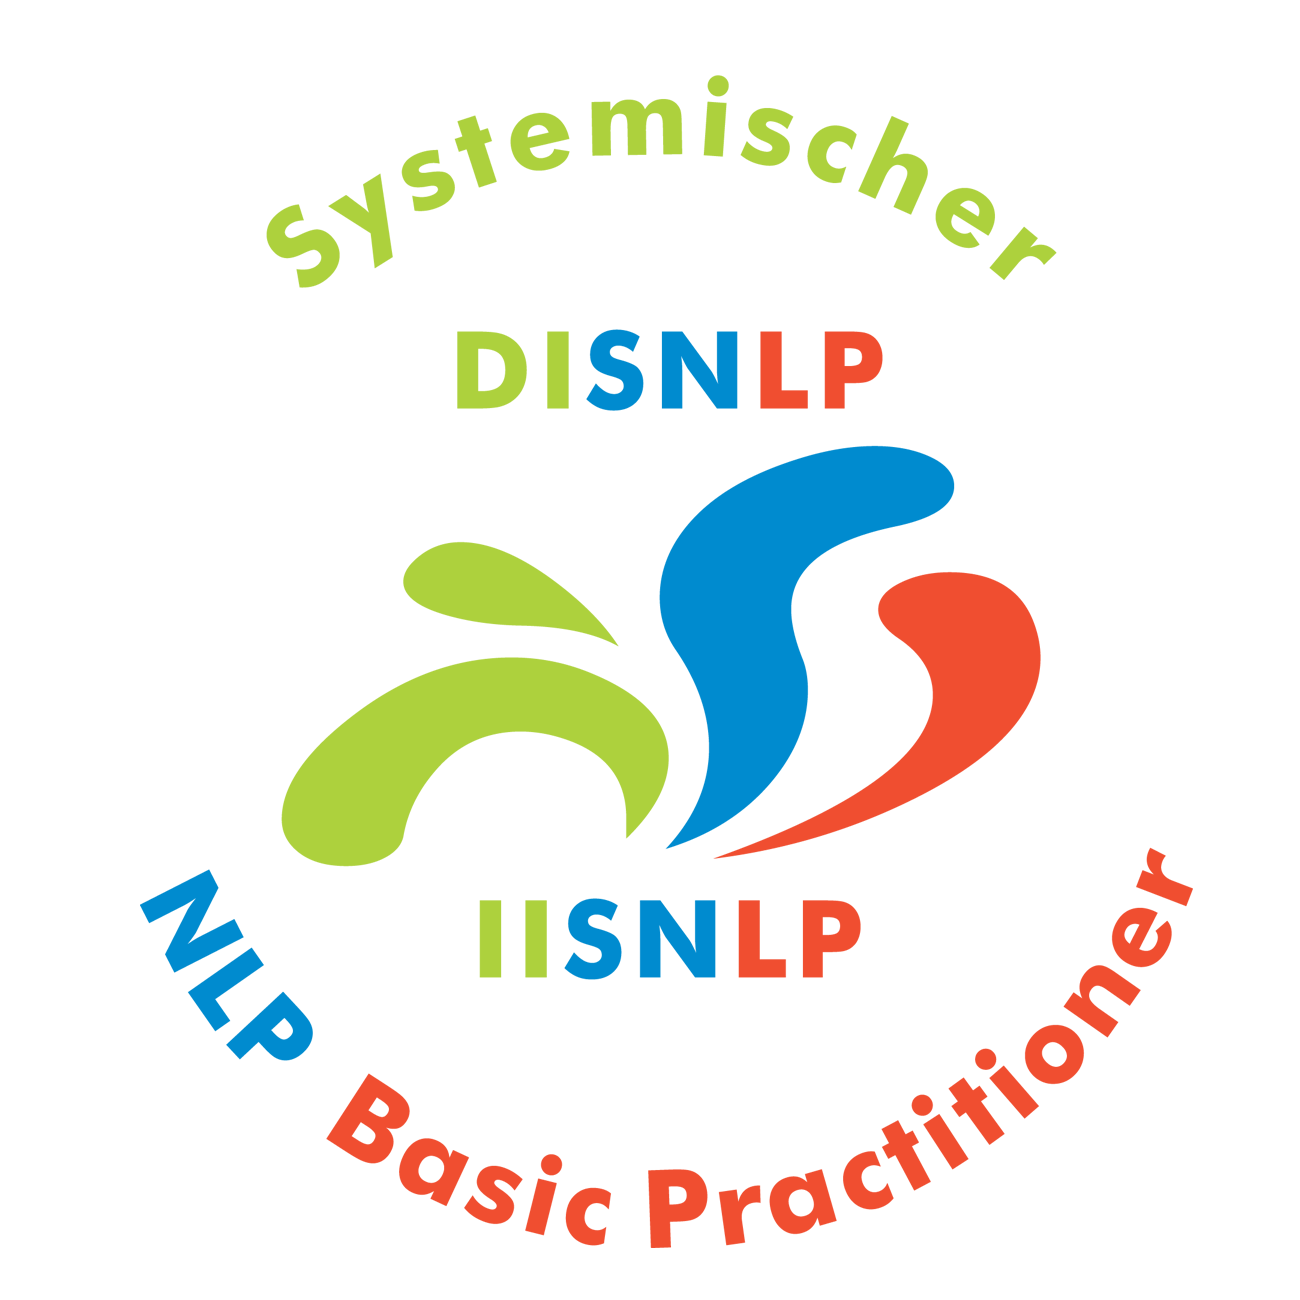 Seminar Selbstbewusstsein, Selbstvertrauen, Selbstwert, Selbstsicherheit stärken Koblenz Pfalz mit NLP Coaching Kurs für mehr Selbstbewusstsein